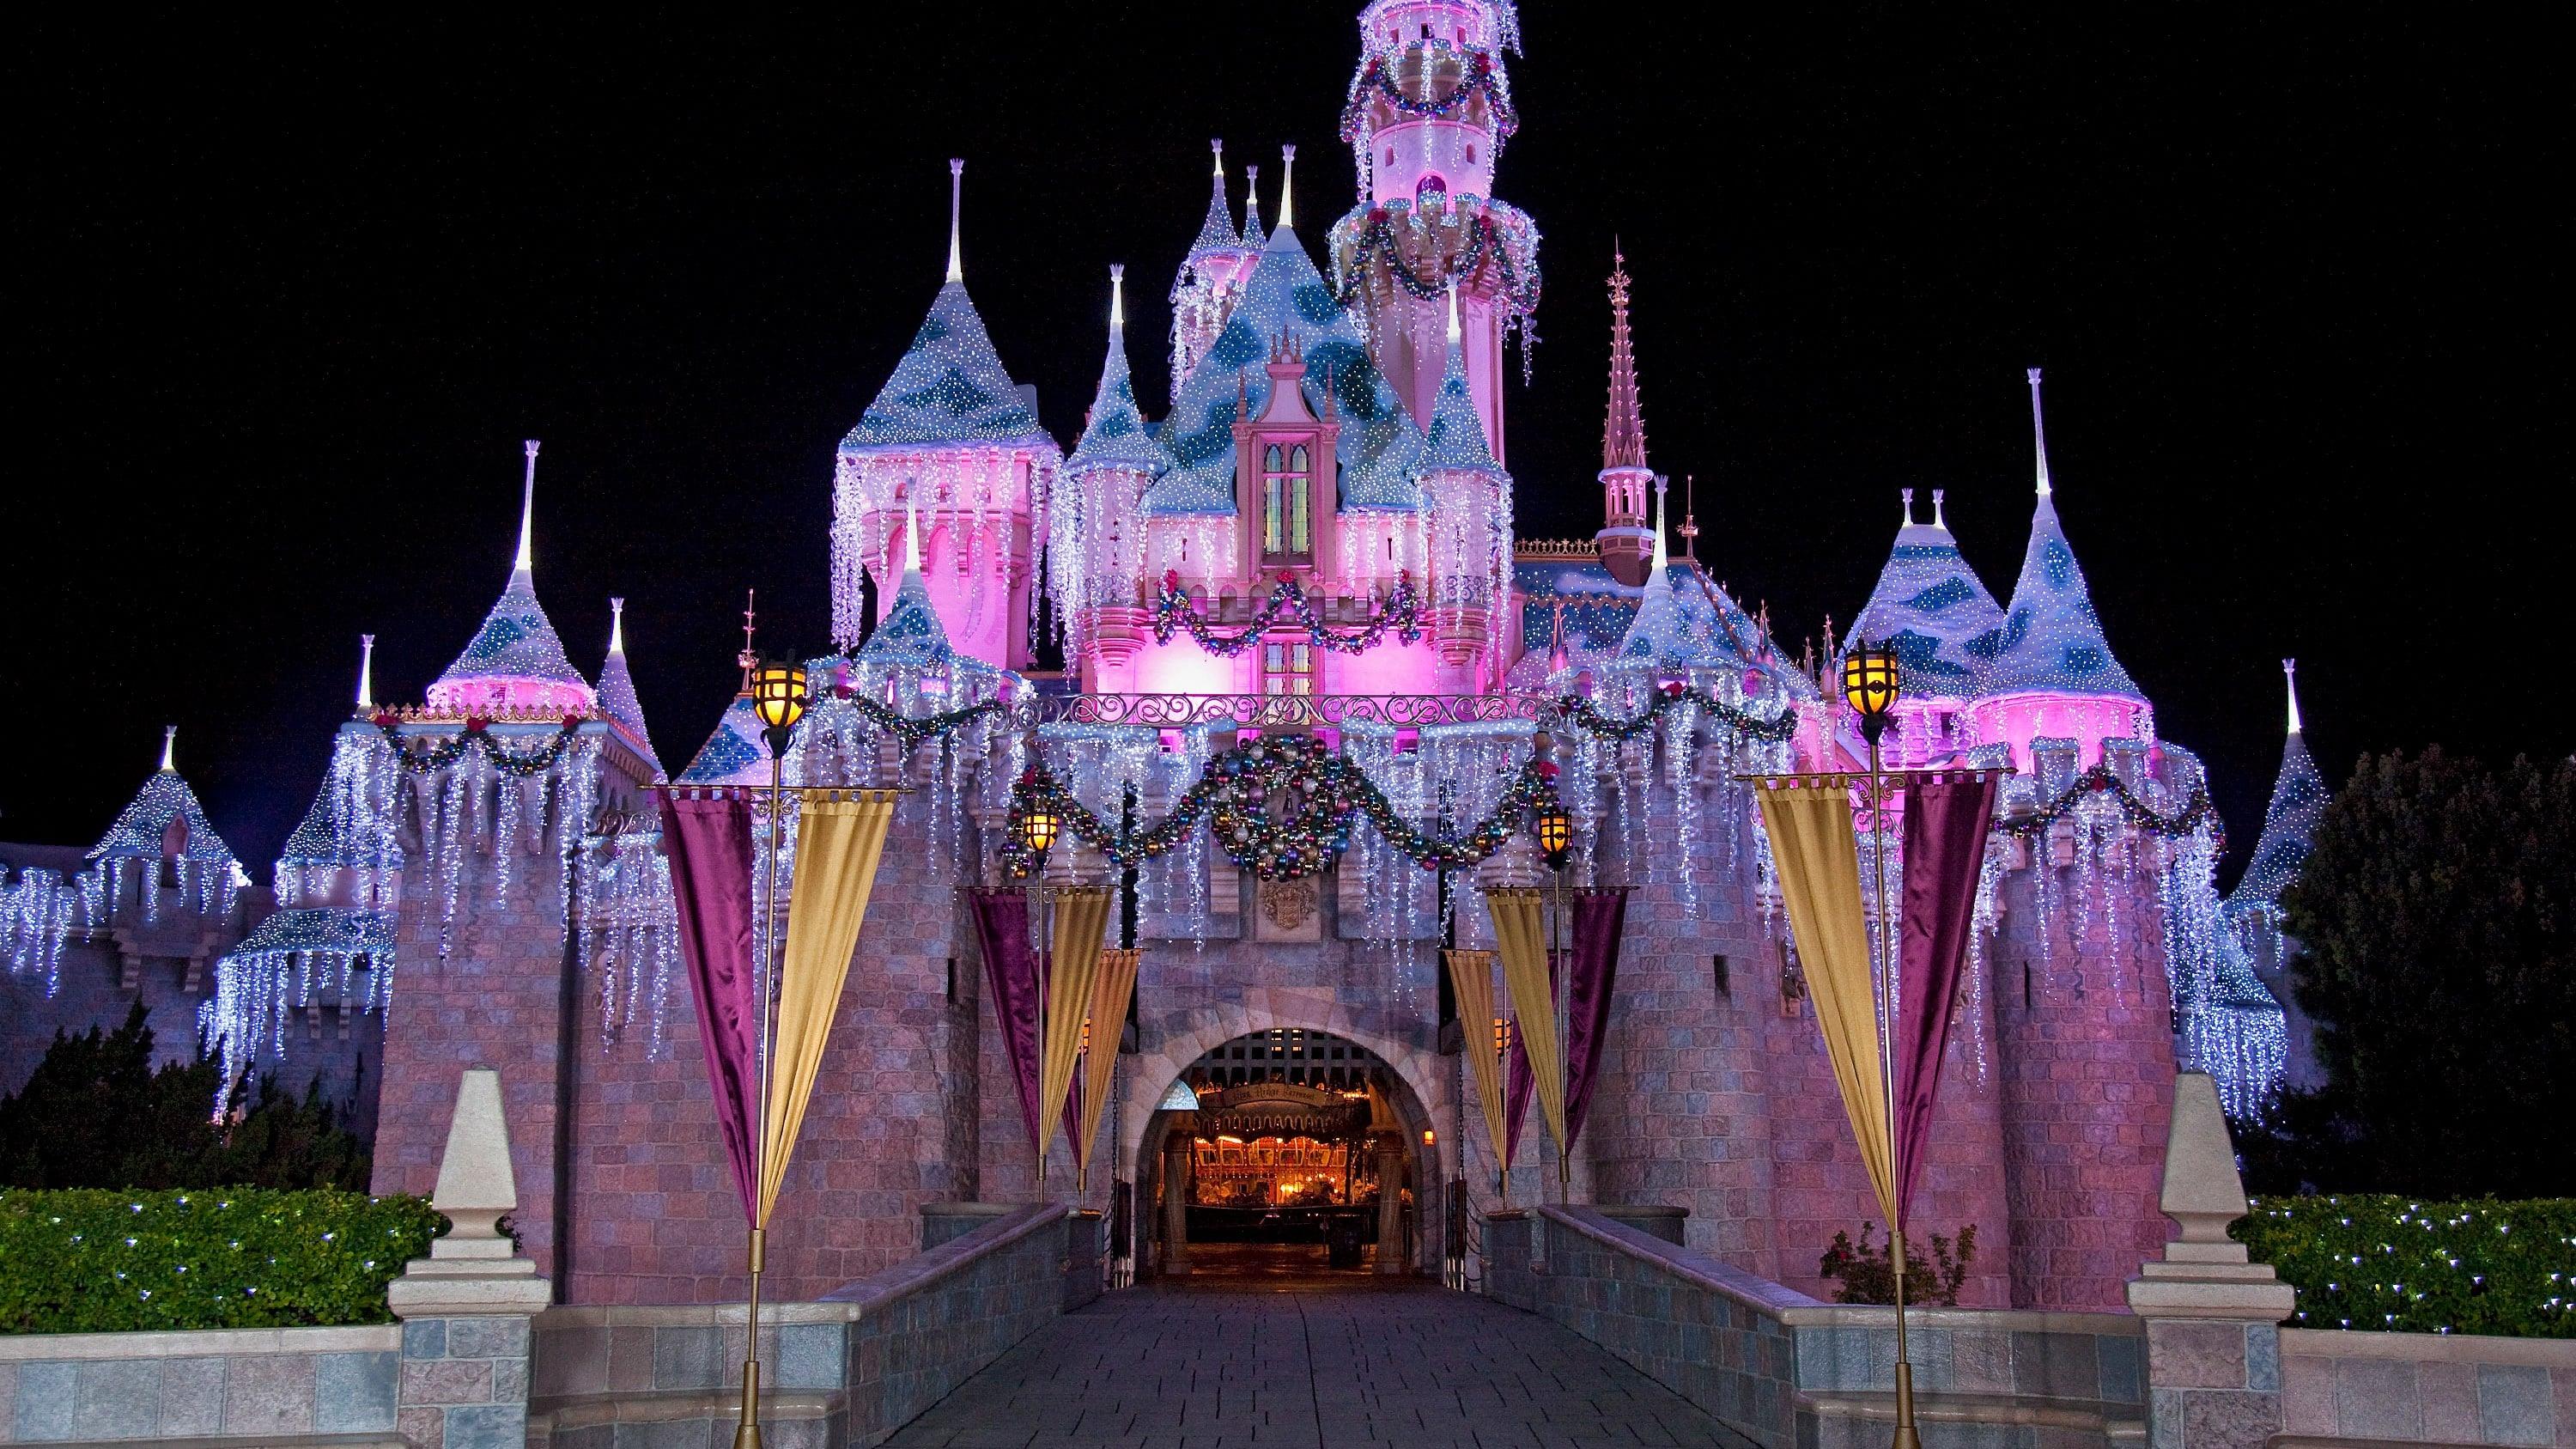 The Wonderful World of Disney: Magical Holiday Celebration backdrop